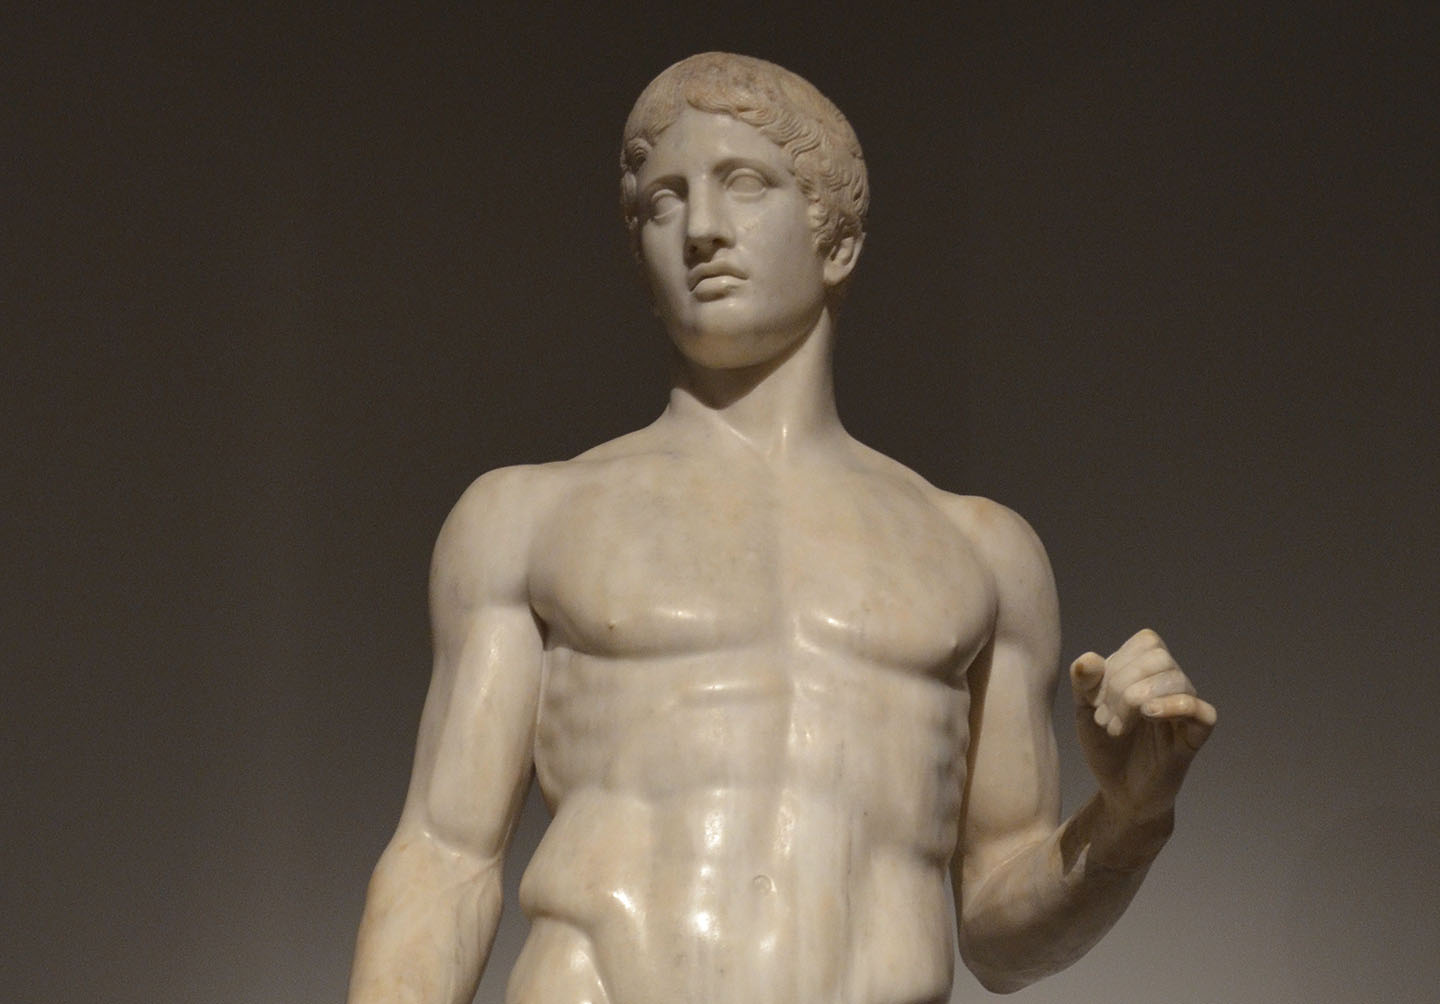 Chuẩn tắc của Polykleitos (tiêu chuẩn tỷ lệ thẩm mỹ) được trình bày hoàn hảo nhất trong tác phẩm Doryphoros hoặc là “Spear-bearer” (Người mang giáo) của ông từ thế kỷ thứ năm trước Công Nguyên. (Ảnh: Hình ảnh được cắt bởi Following Hadrian/CC BY-SA 2.0)